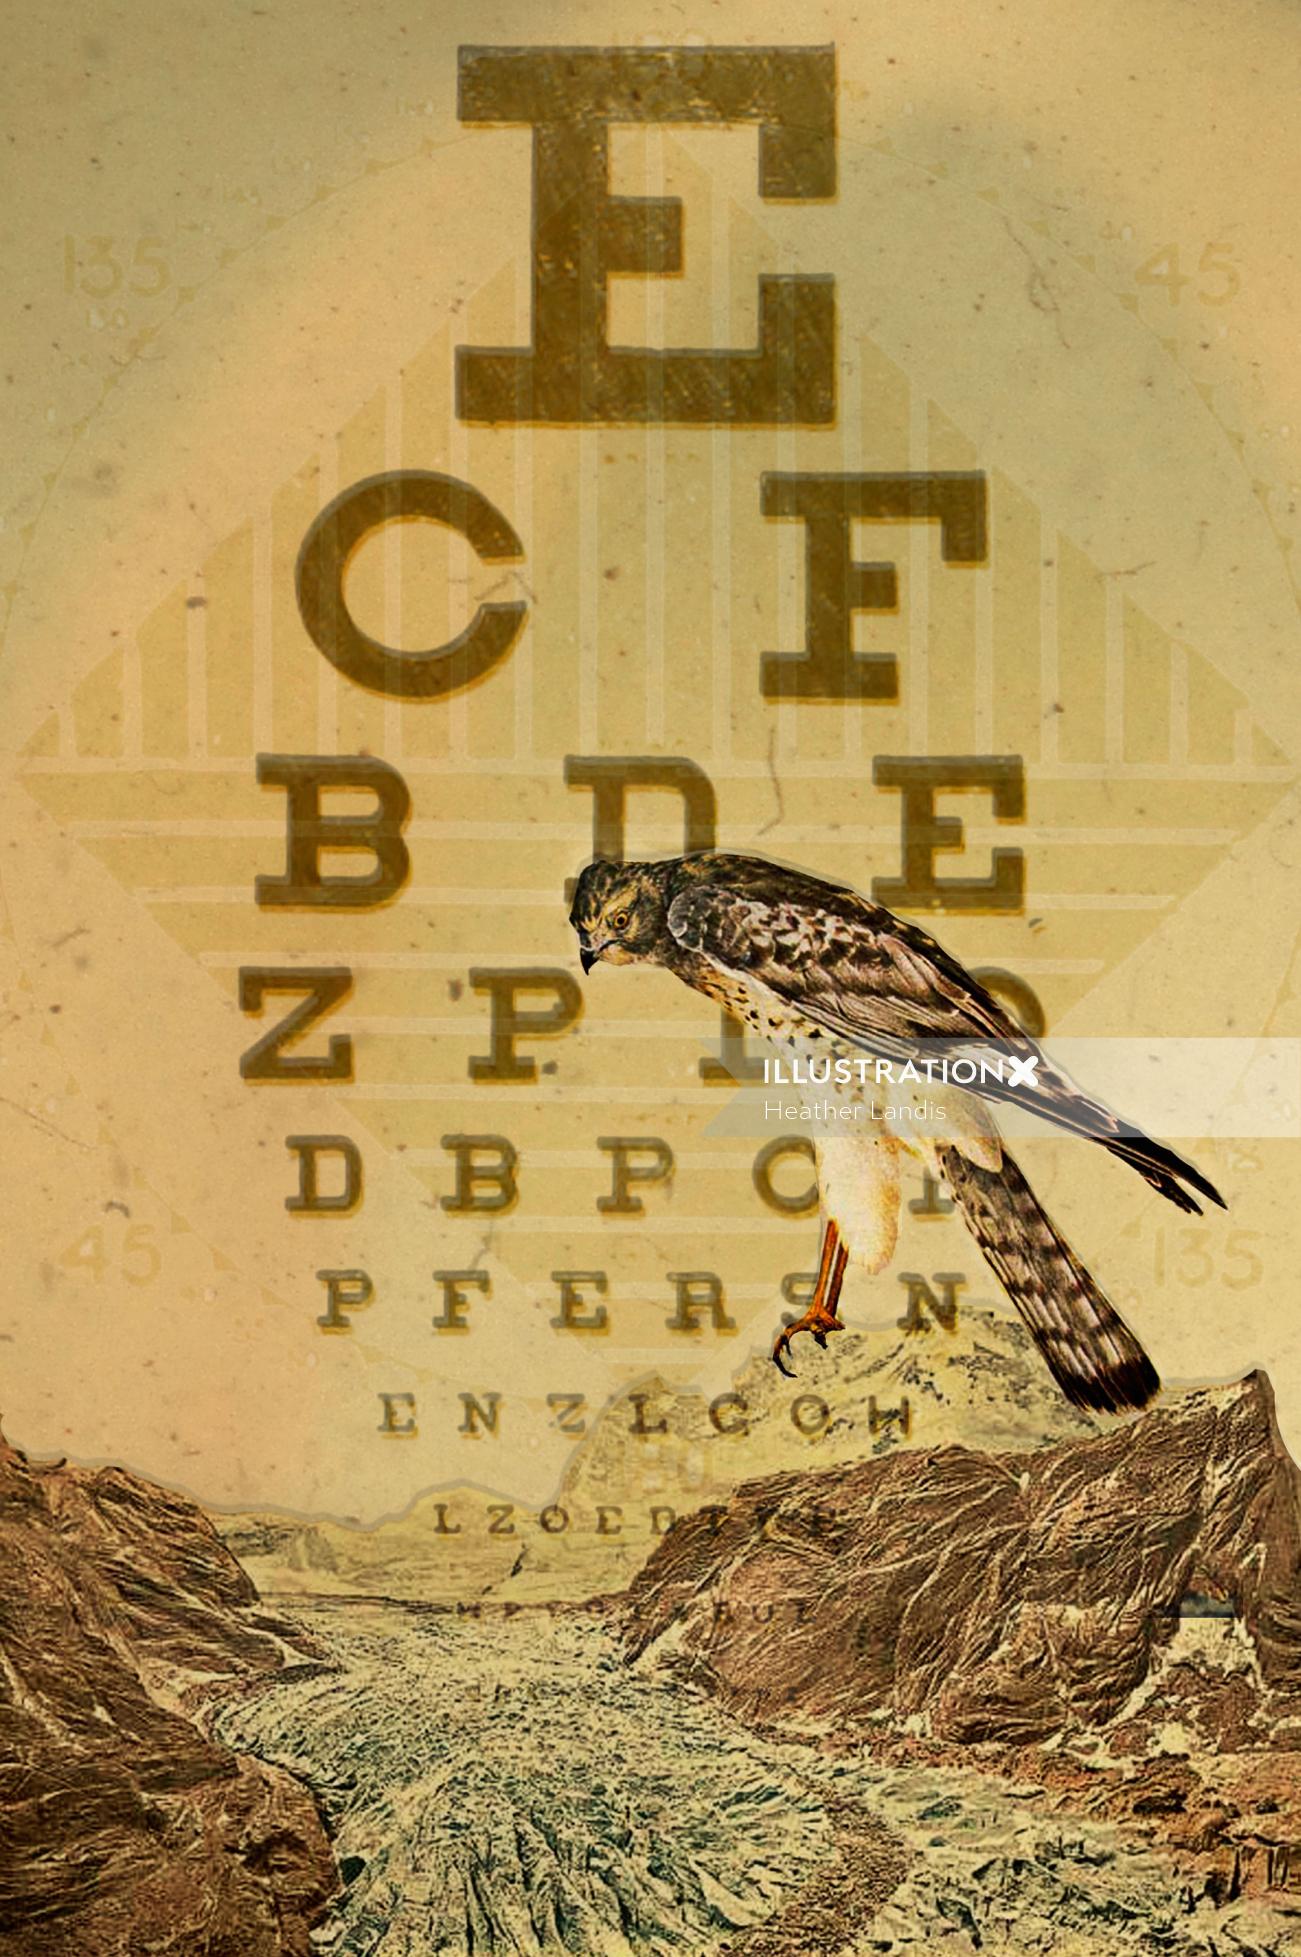 Eye chart lettering art
